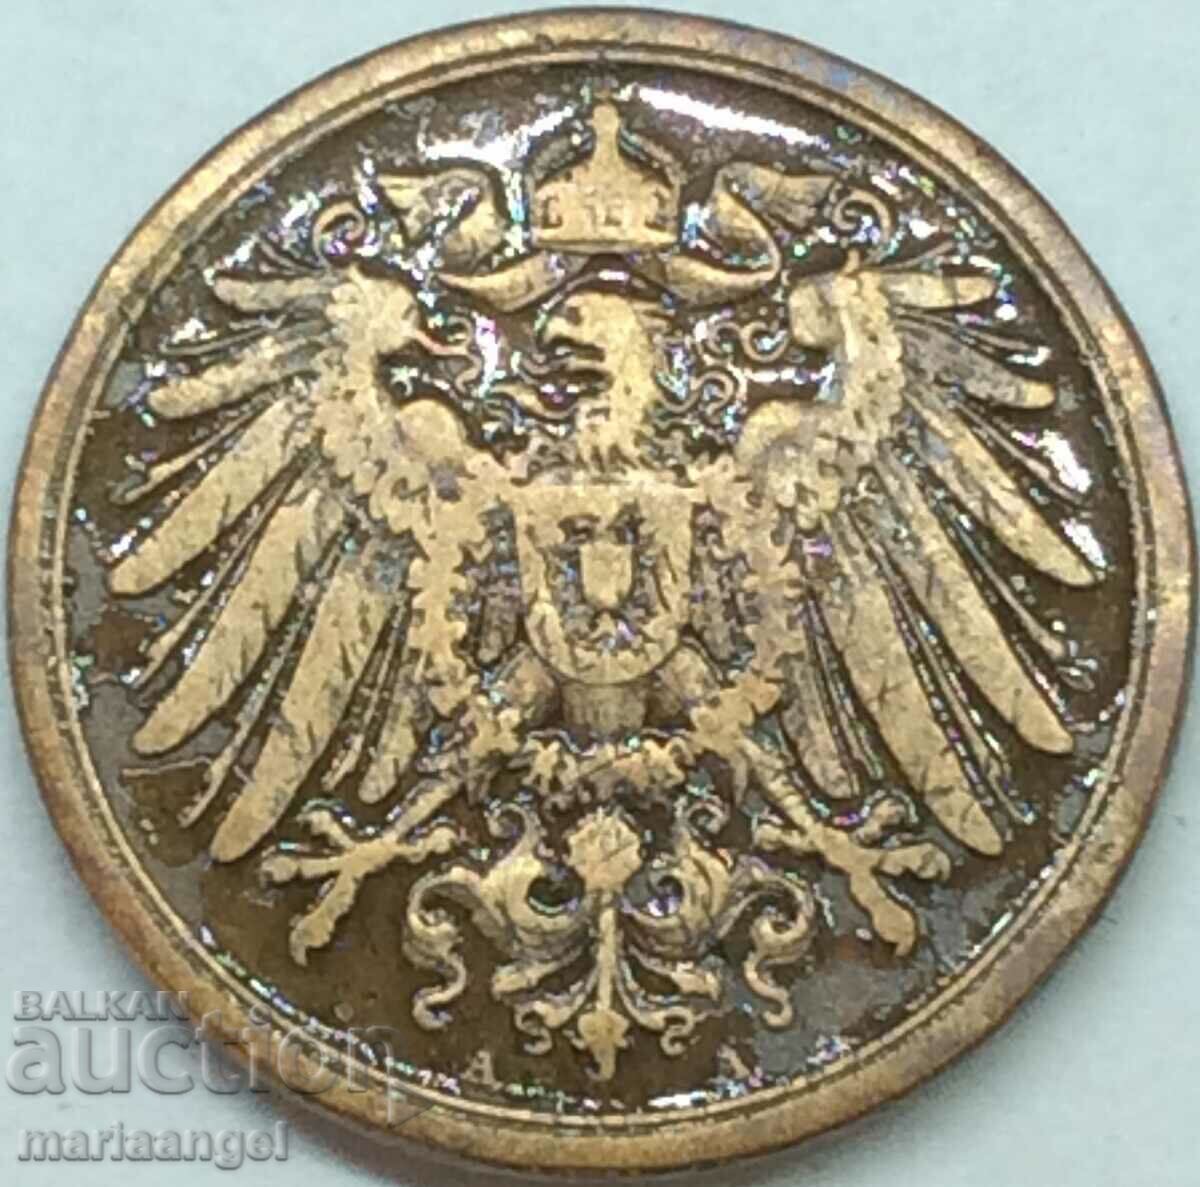 2 Pfennig 1904 Germany